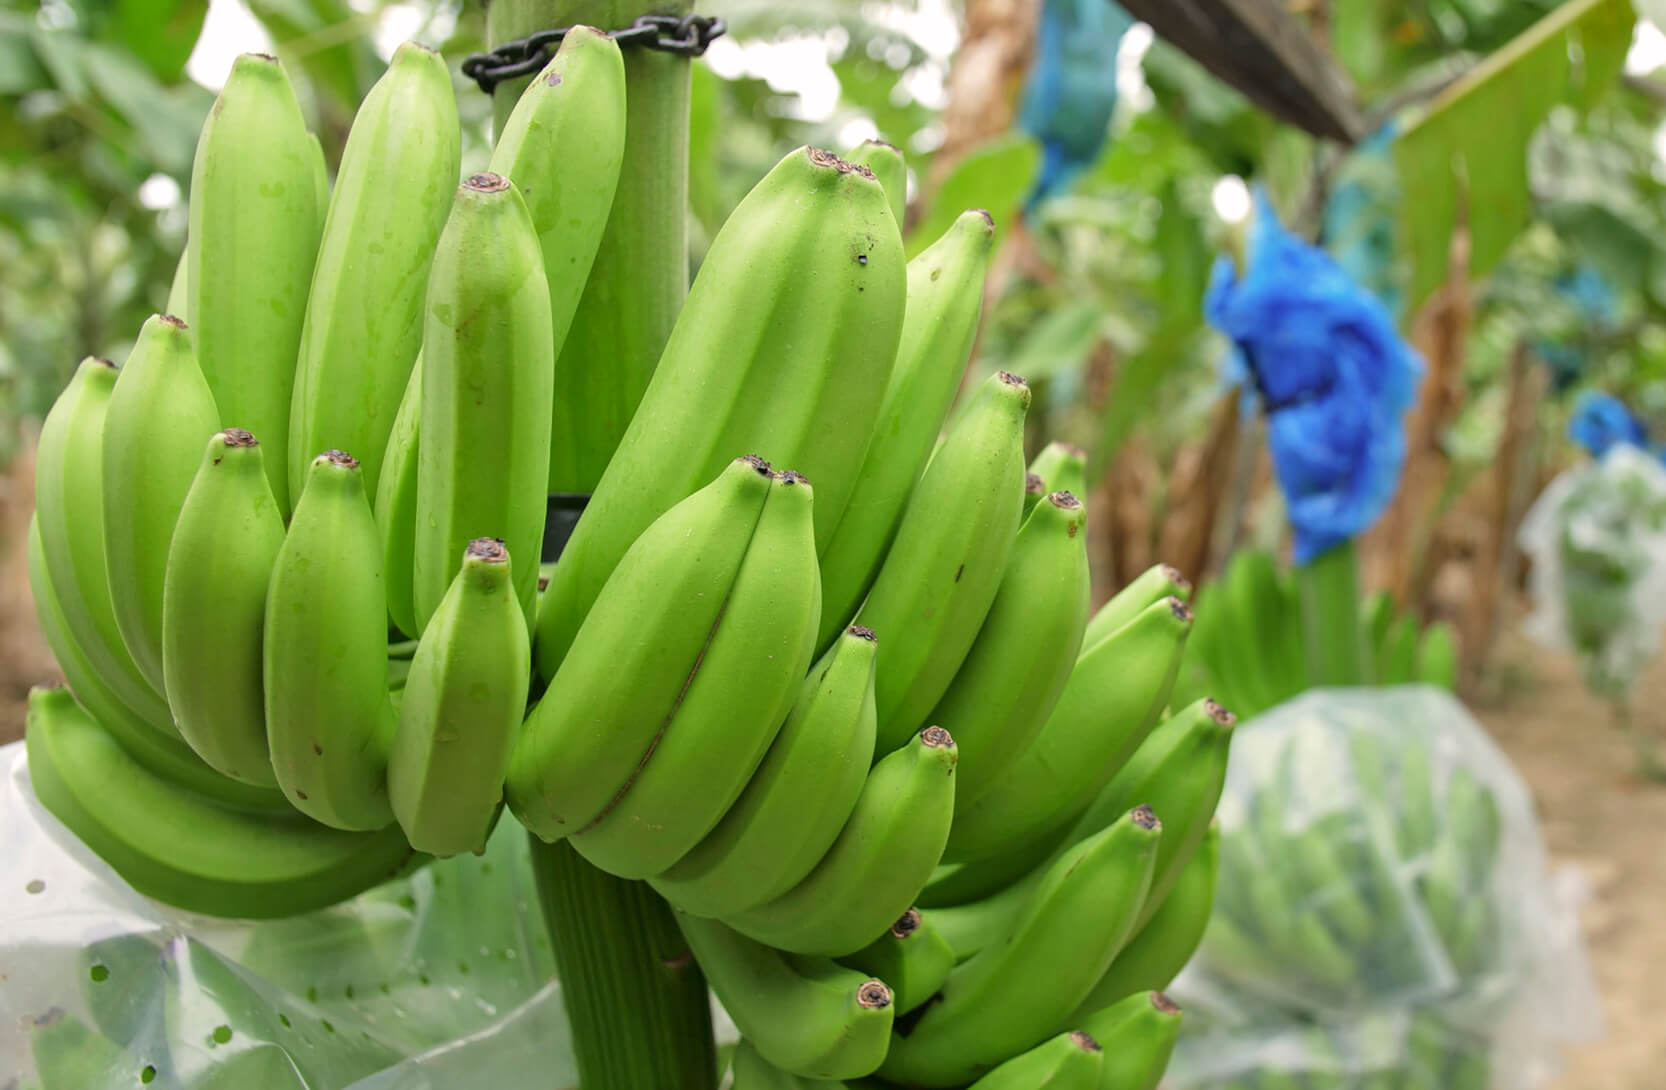 Reilun kaupan tuottajien olot ja ympäristön tila paranevat yhteistyöllä. Kuvassa Reilun kaupan banaaneja.